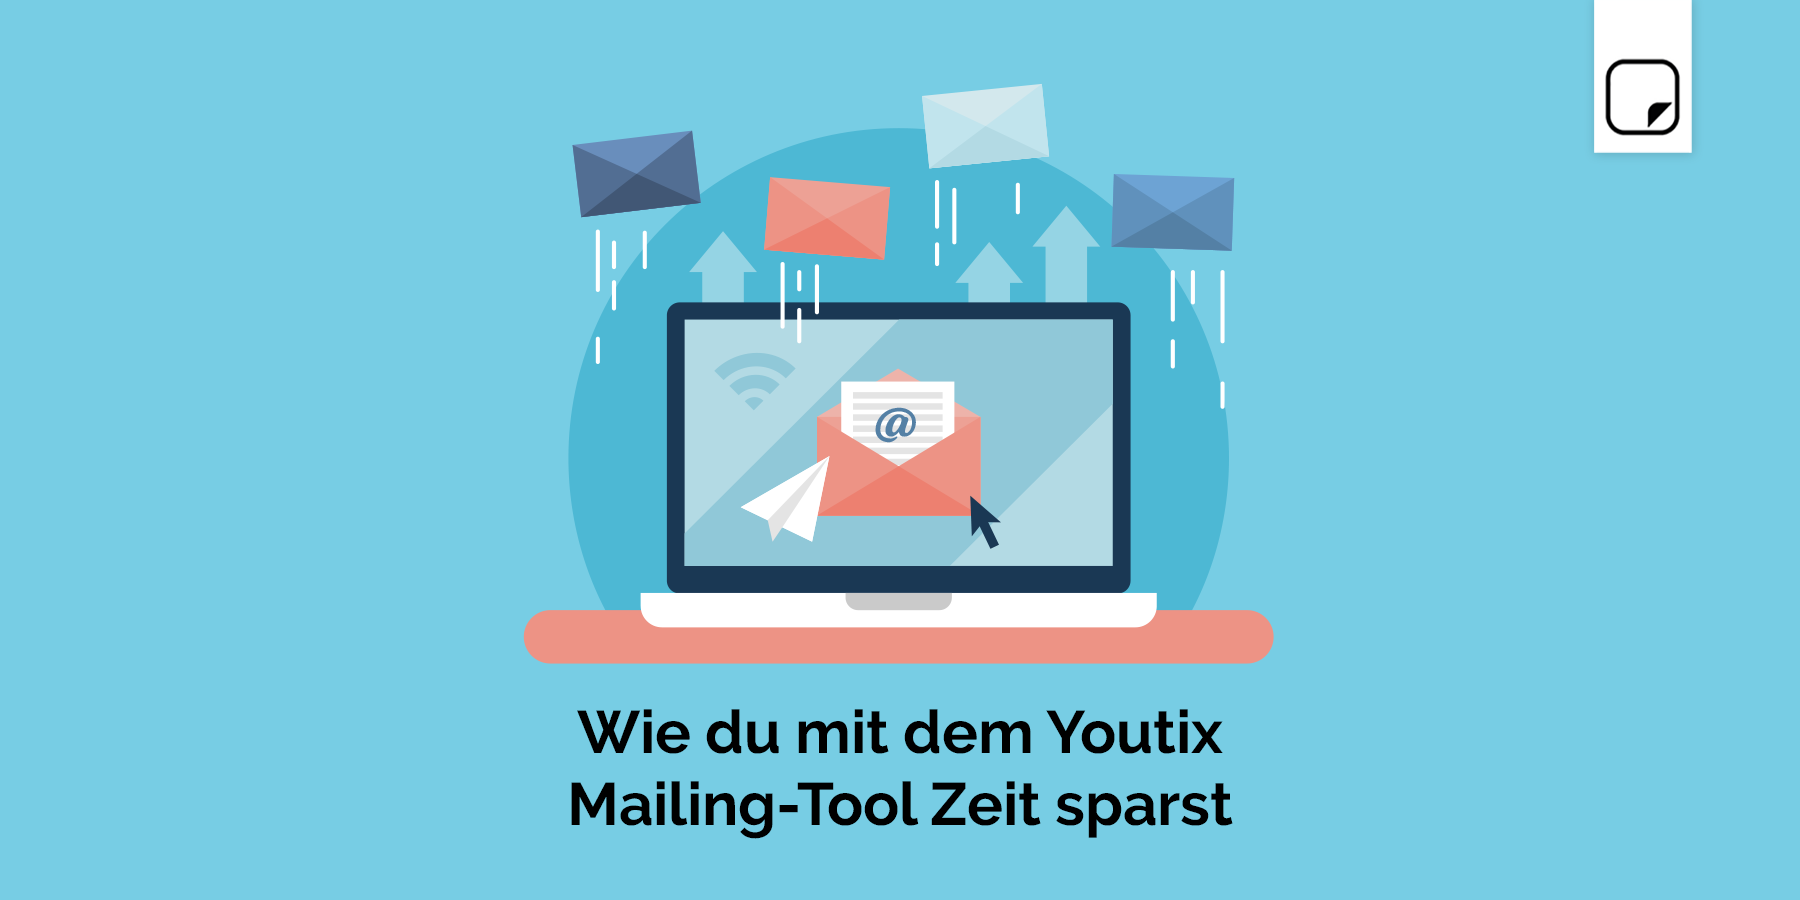 Wie du mit dem Youtix Mailing-Tool Zeit sparst